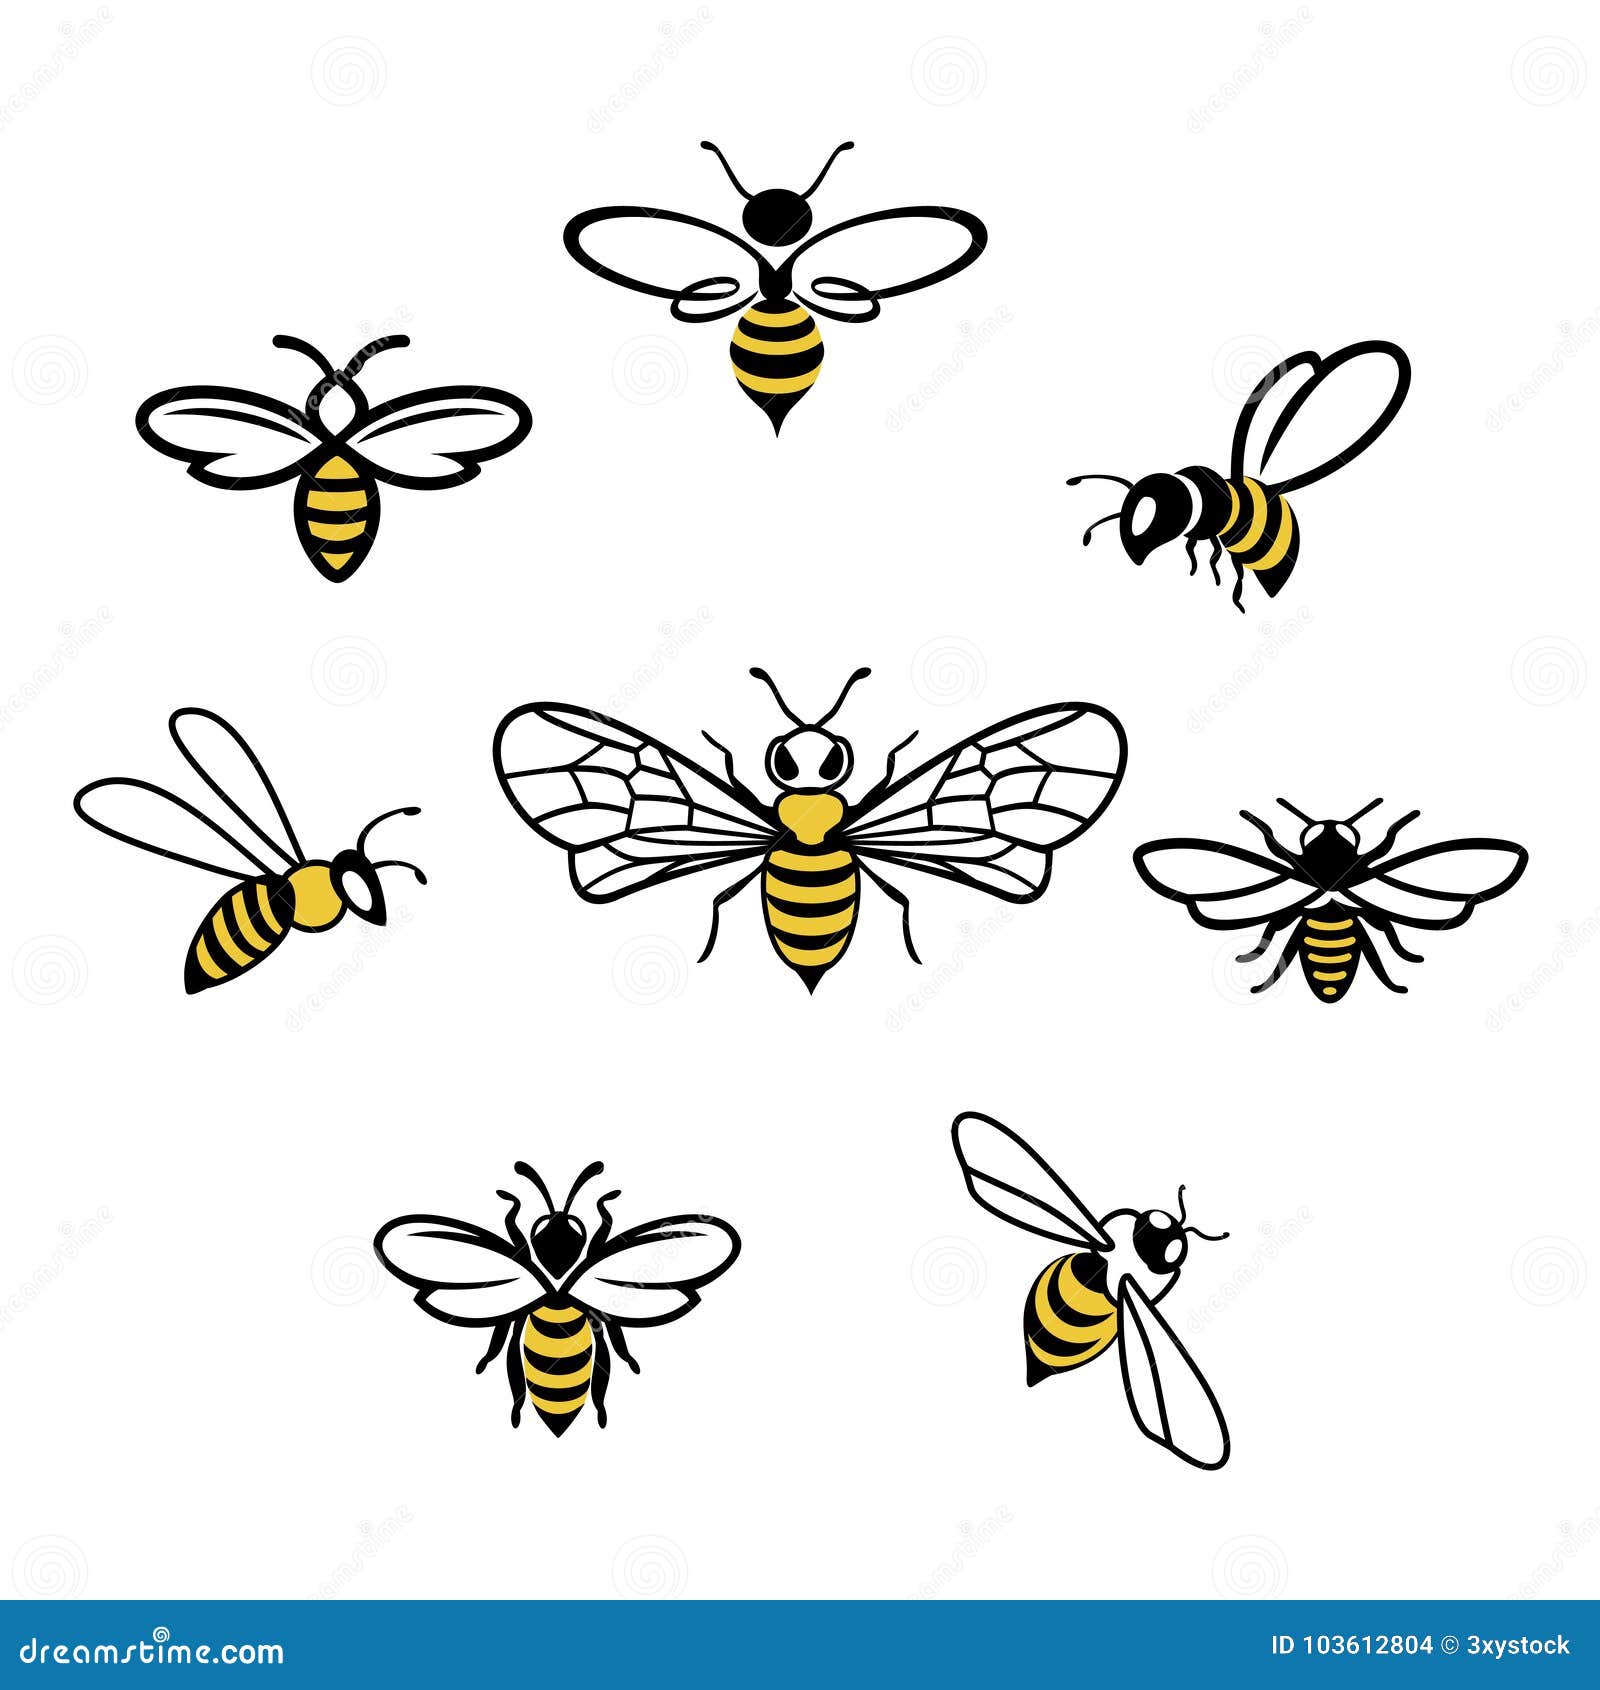 honey bee icons